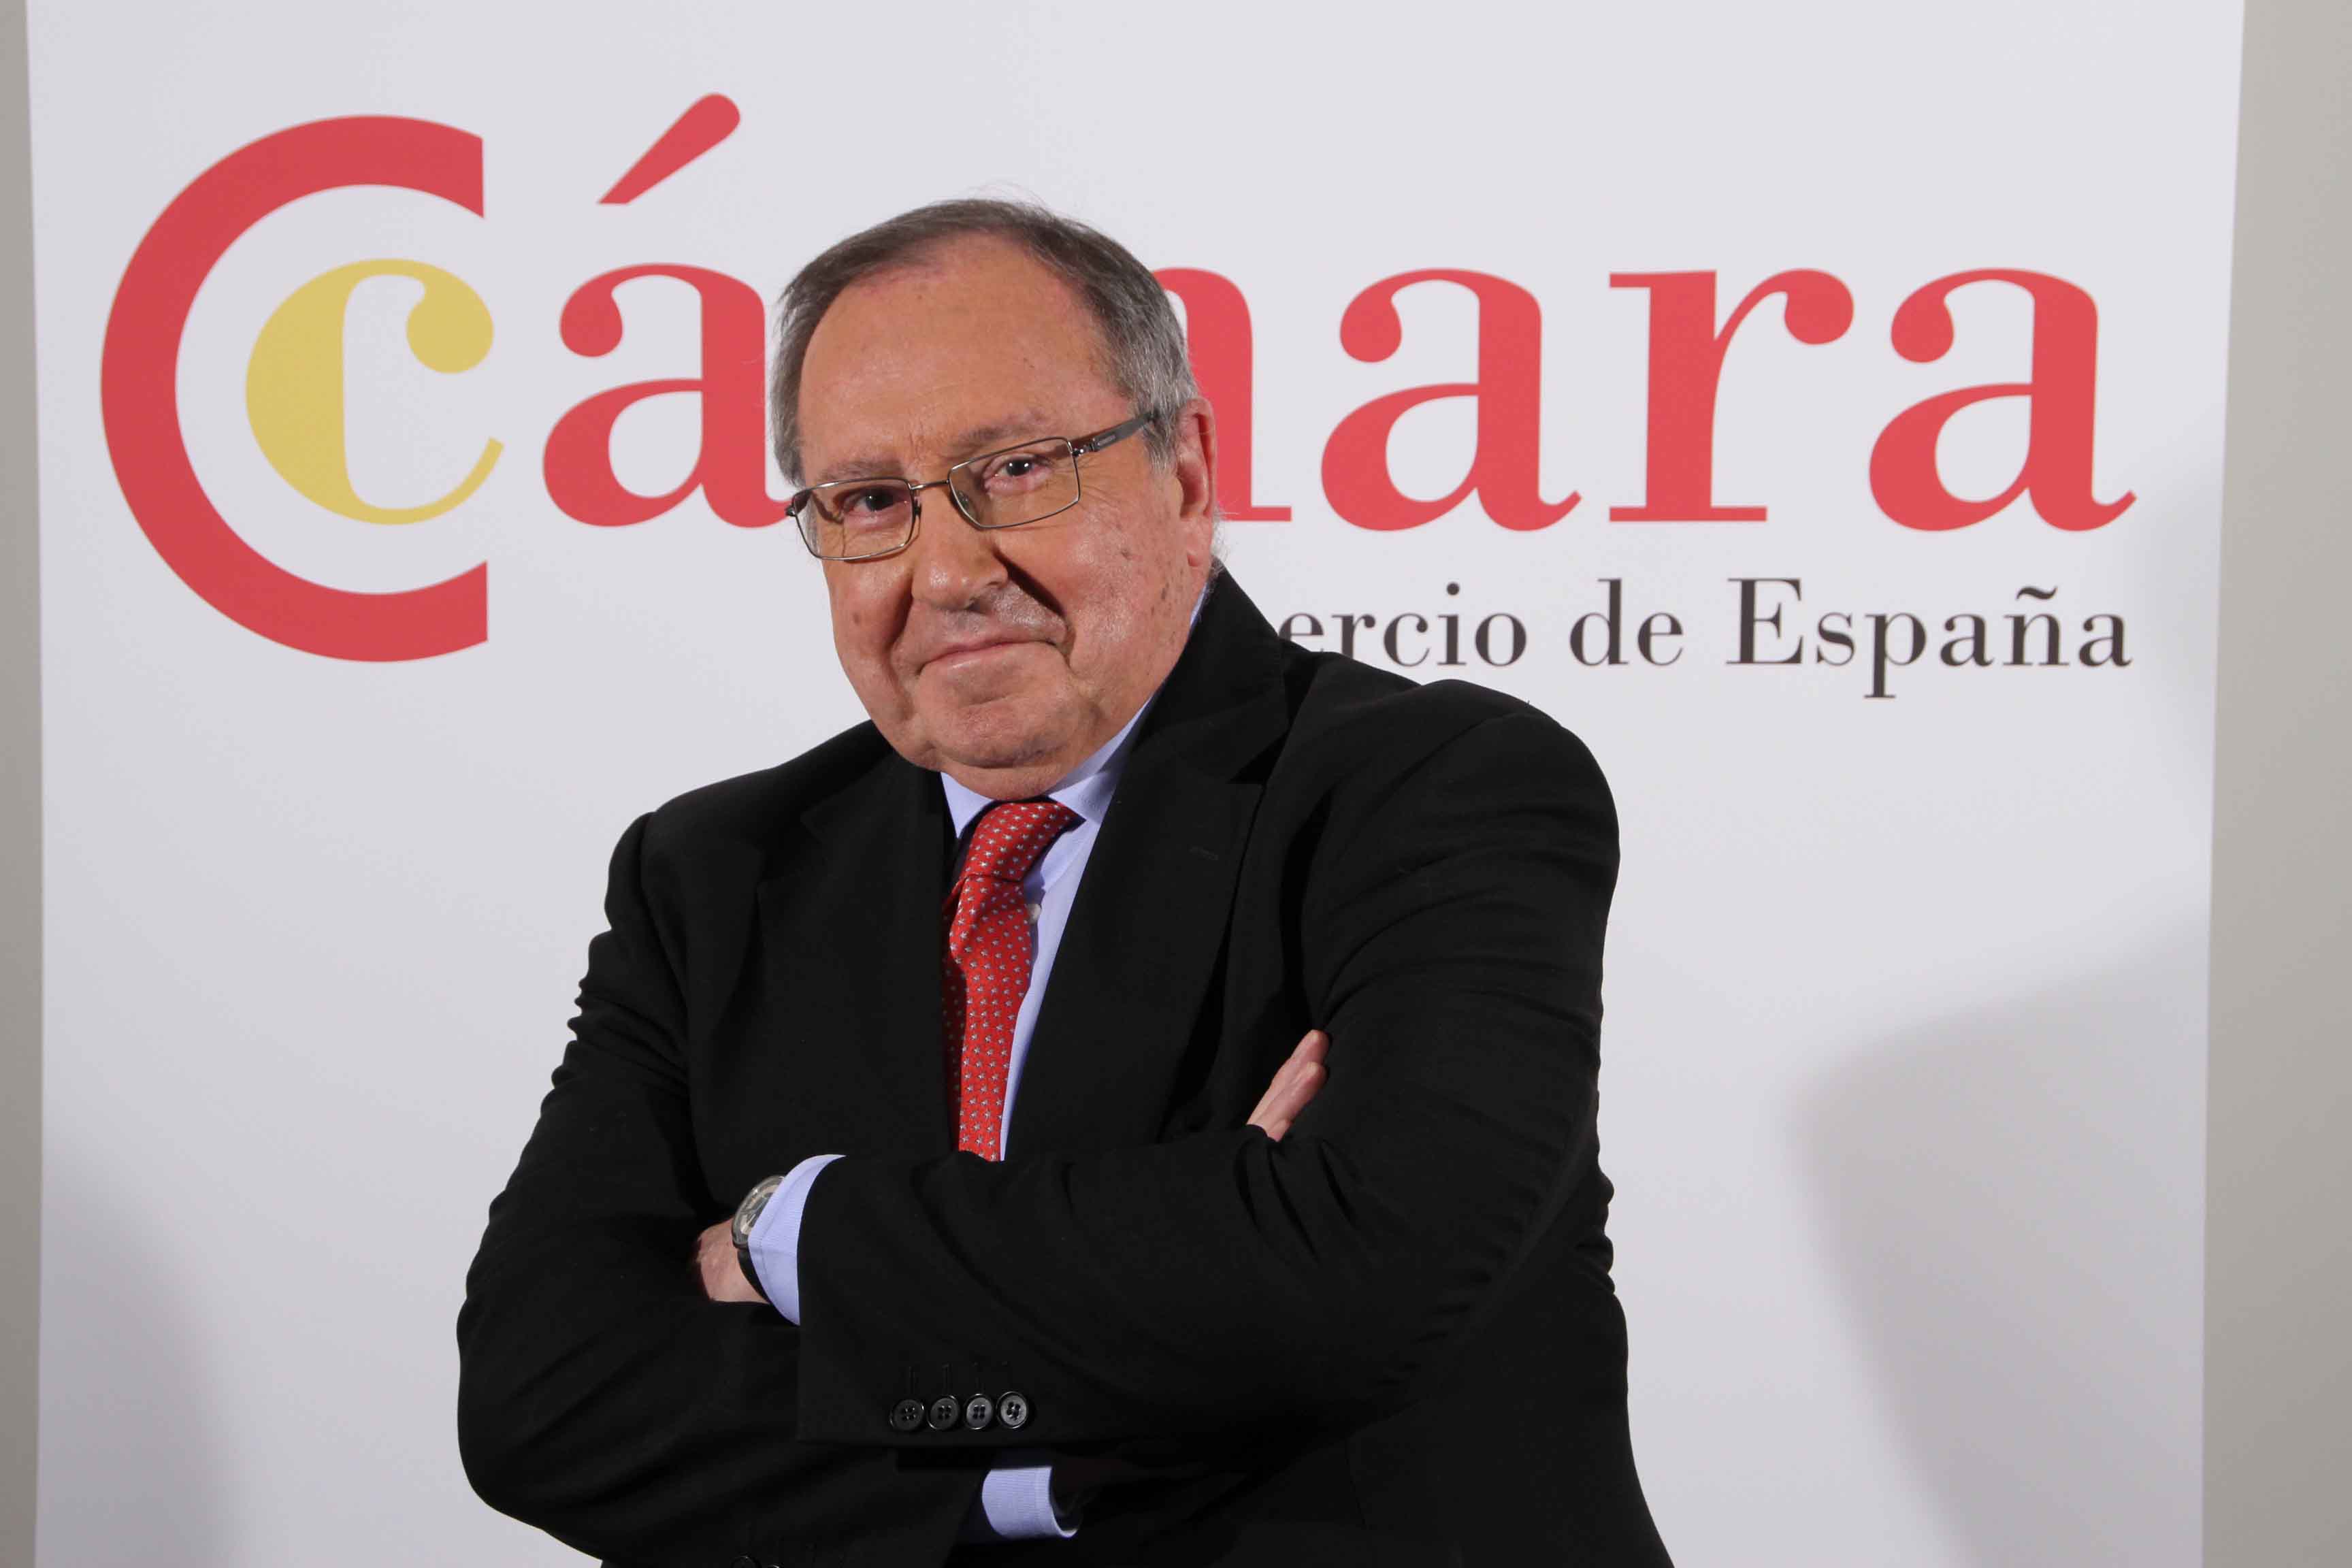 Convenio con la Cámara de Comercio de España para mejorar la competitividad